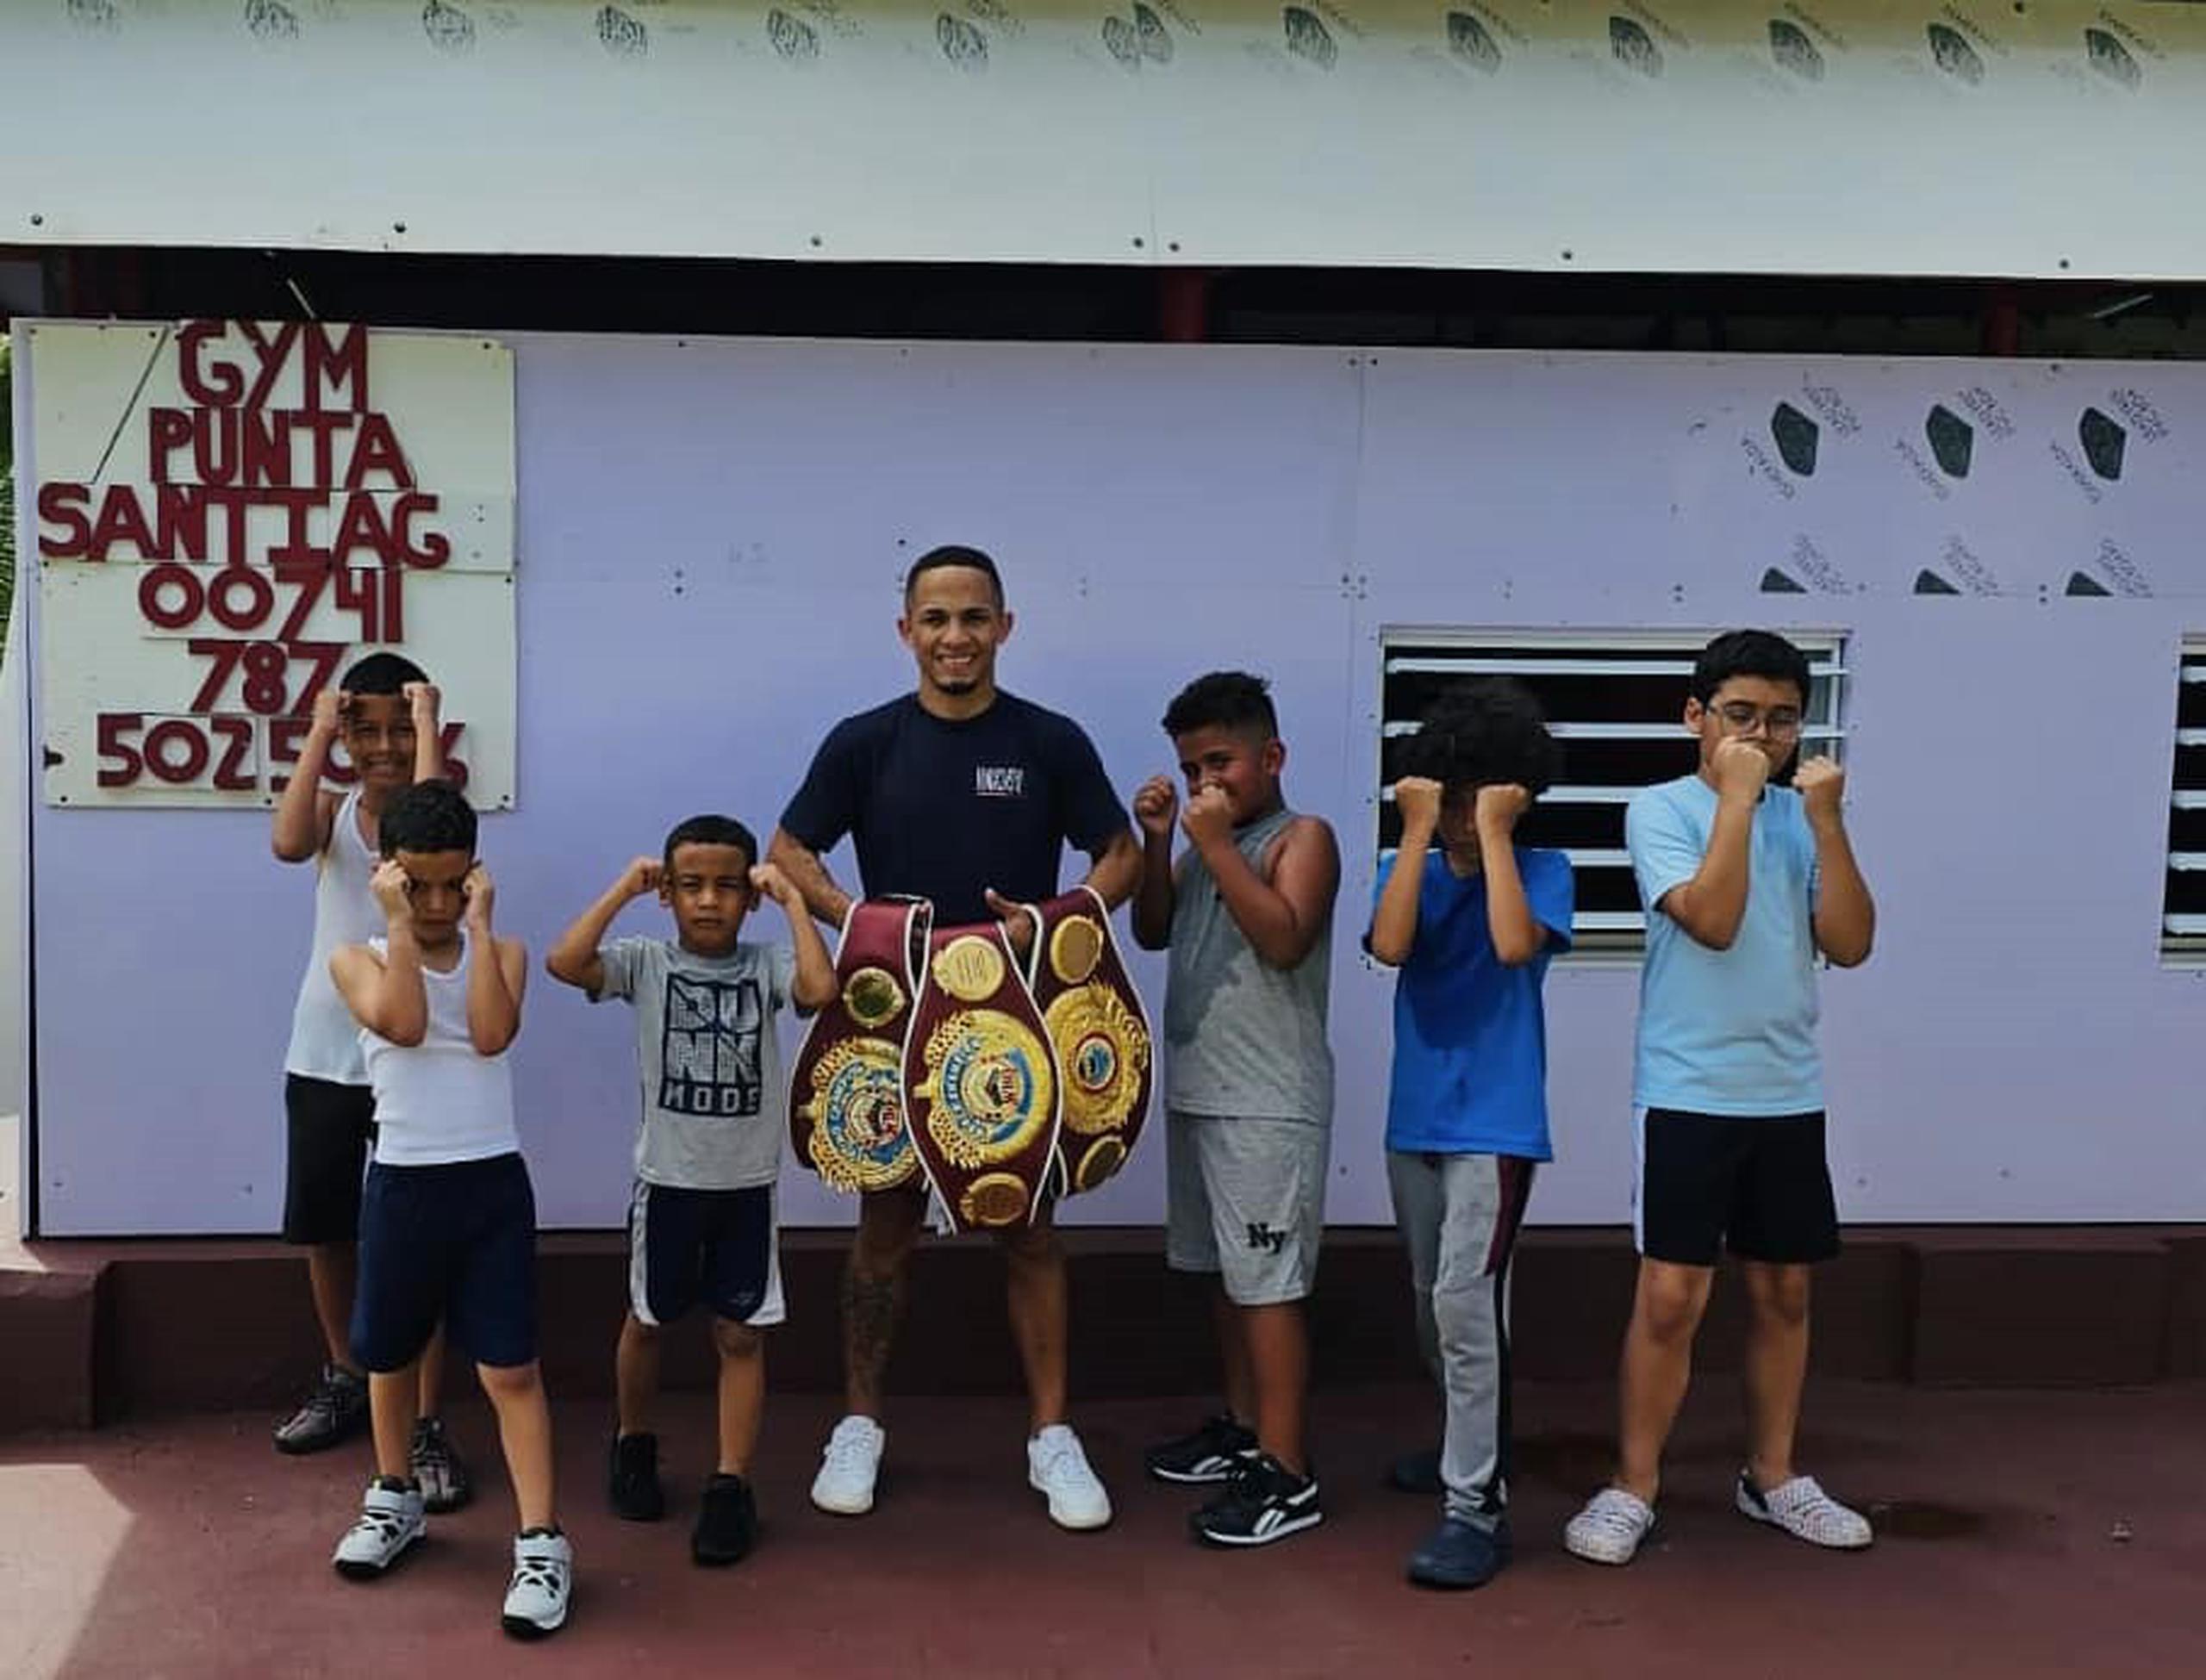 René Santiago utiliza el gimnasio en Punta Santiago para enseñar boxeo a los niños de la comunidad.